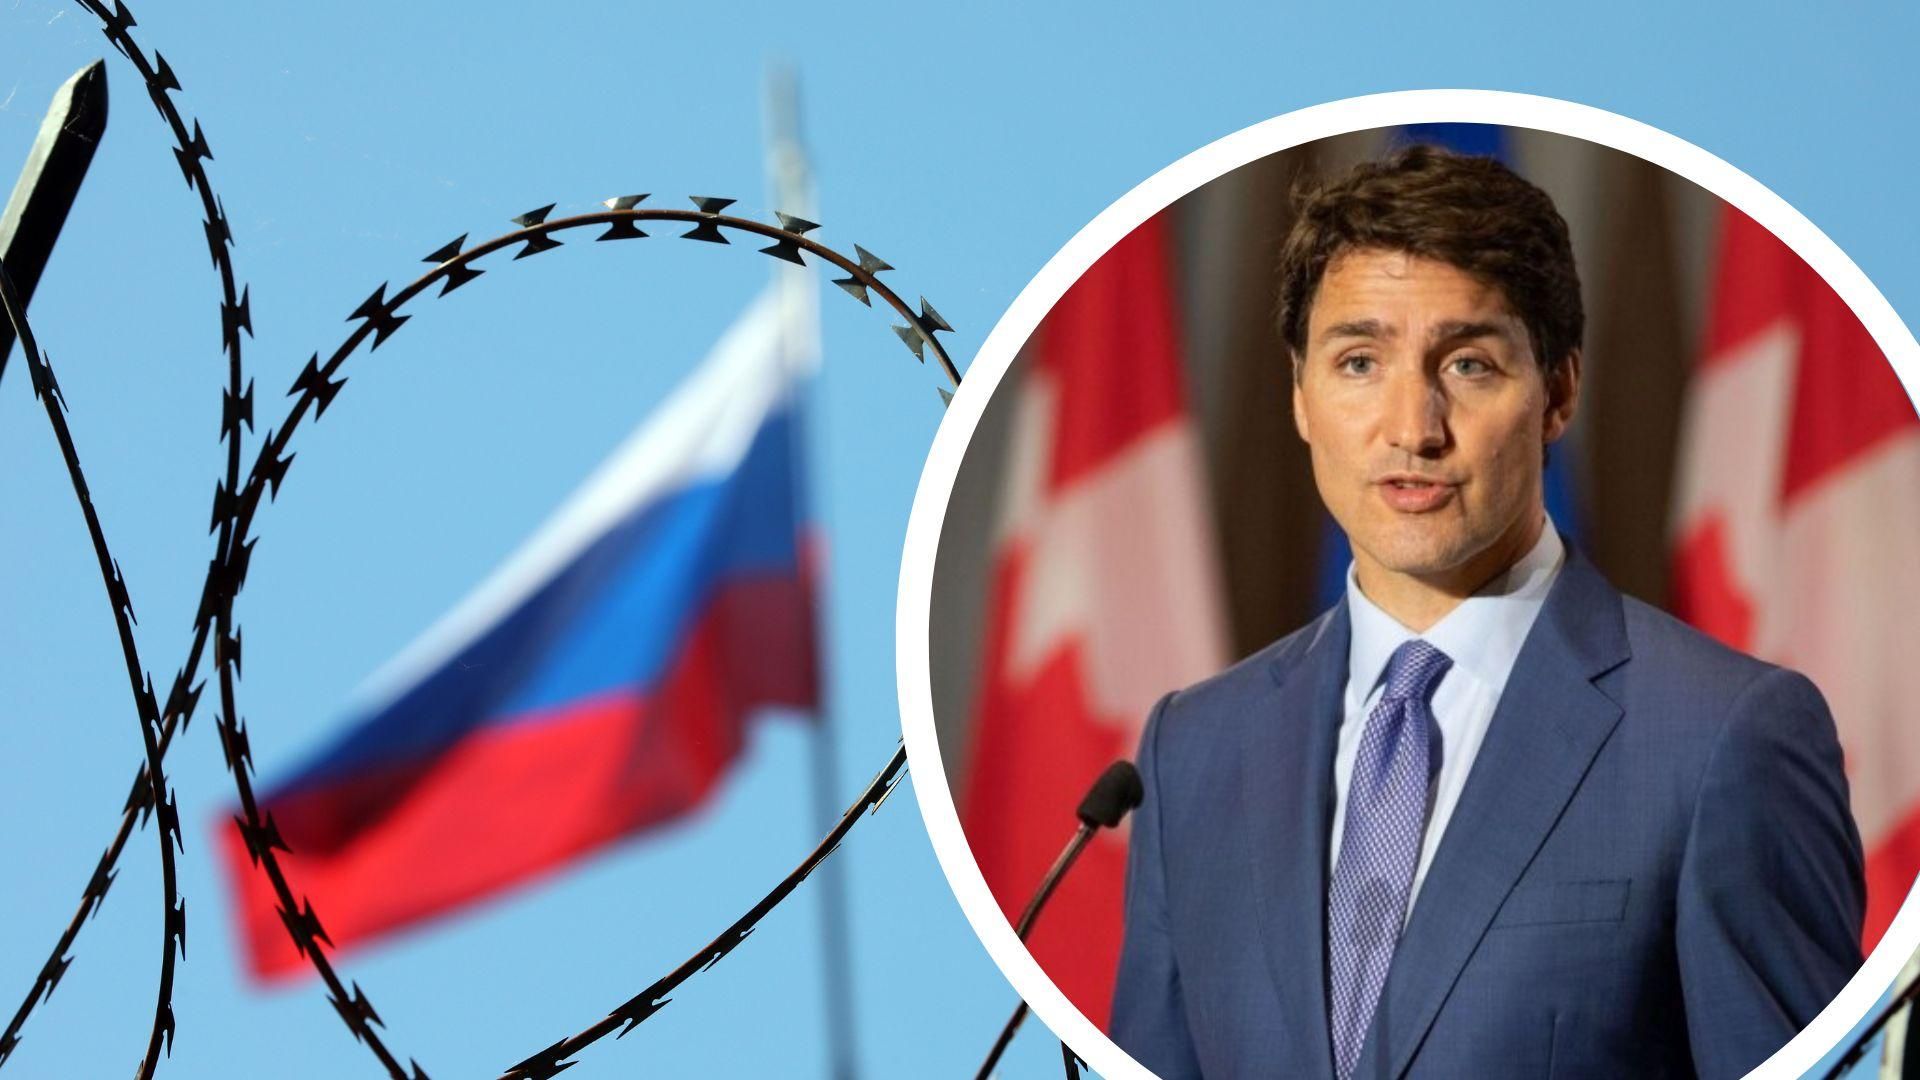 Канадський парламент підтримав конфіскацію російських активів